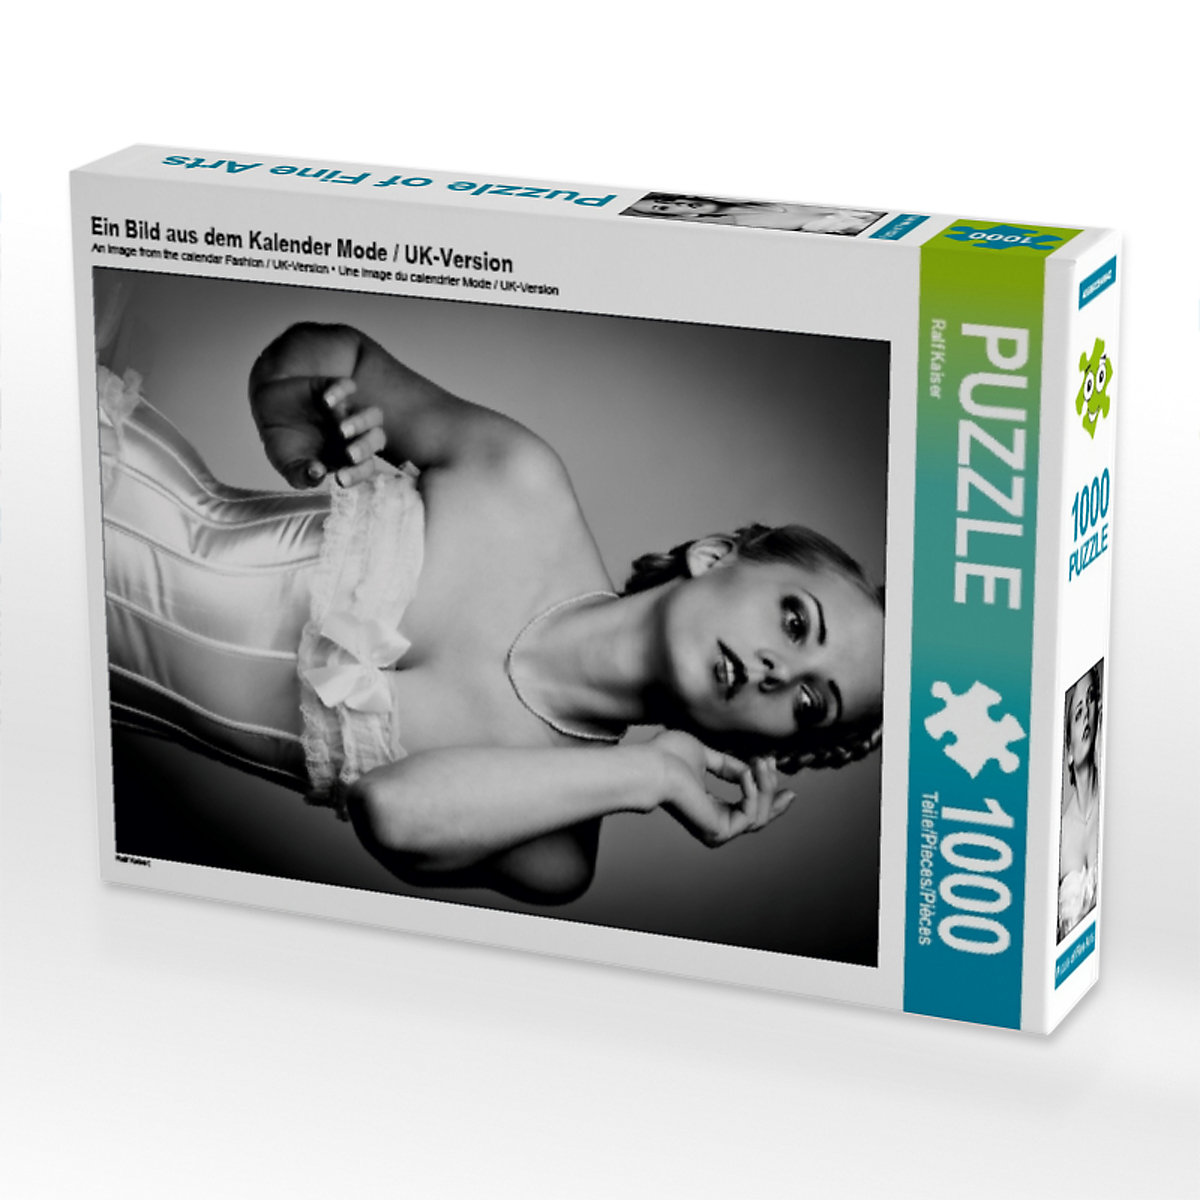 CALVENDO® Puzzle CALVENDO Puzzle Ein Bild aus dem Kalender Mode / UK-Version 1000 Teile Foto-Puzzle für glückliche Stunden